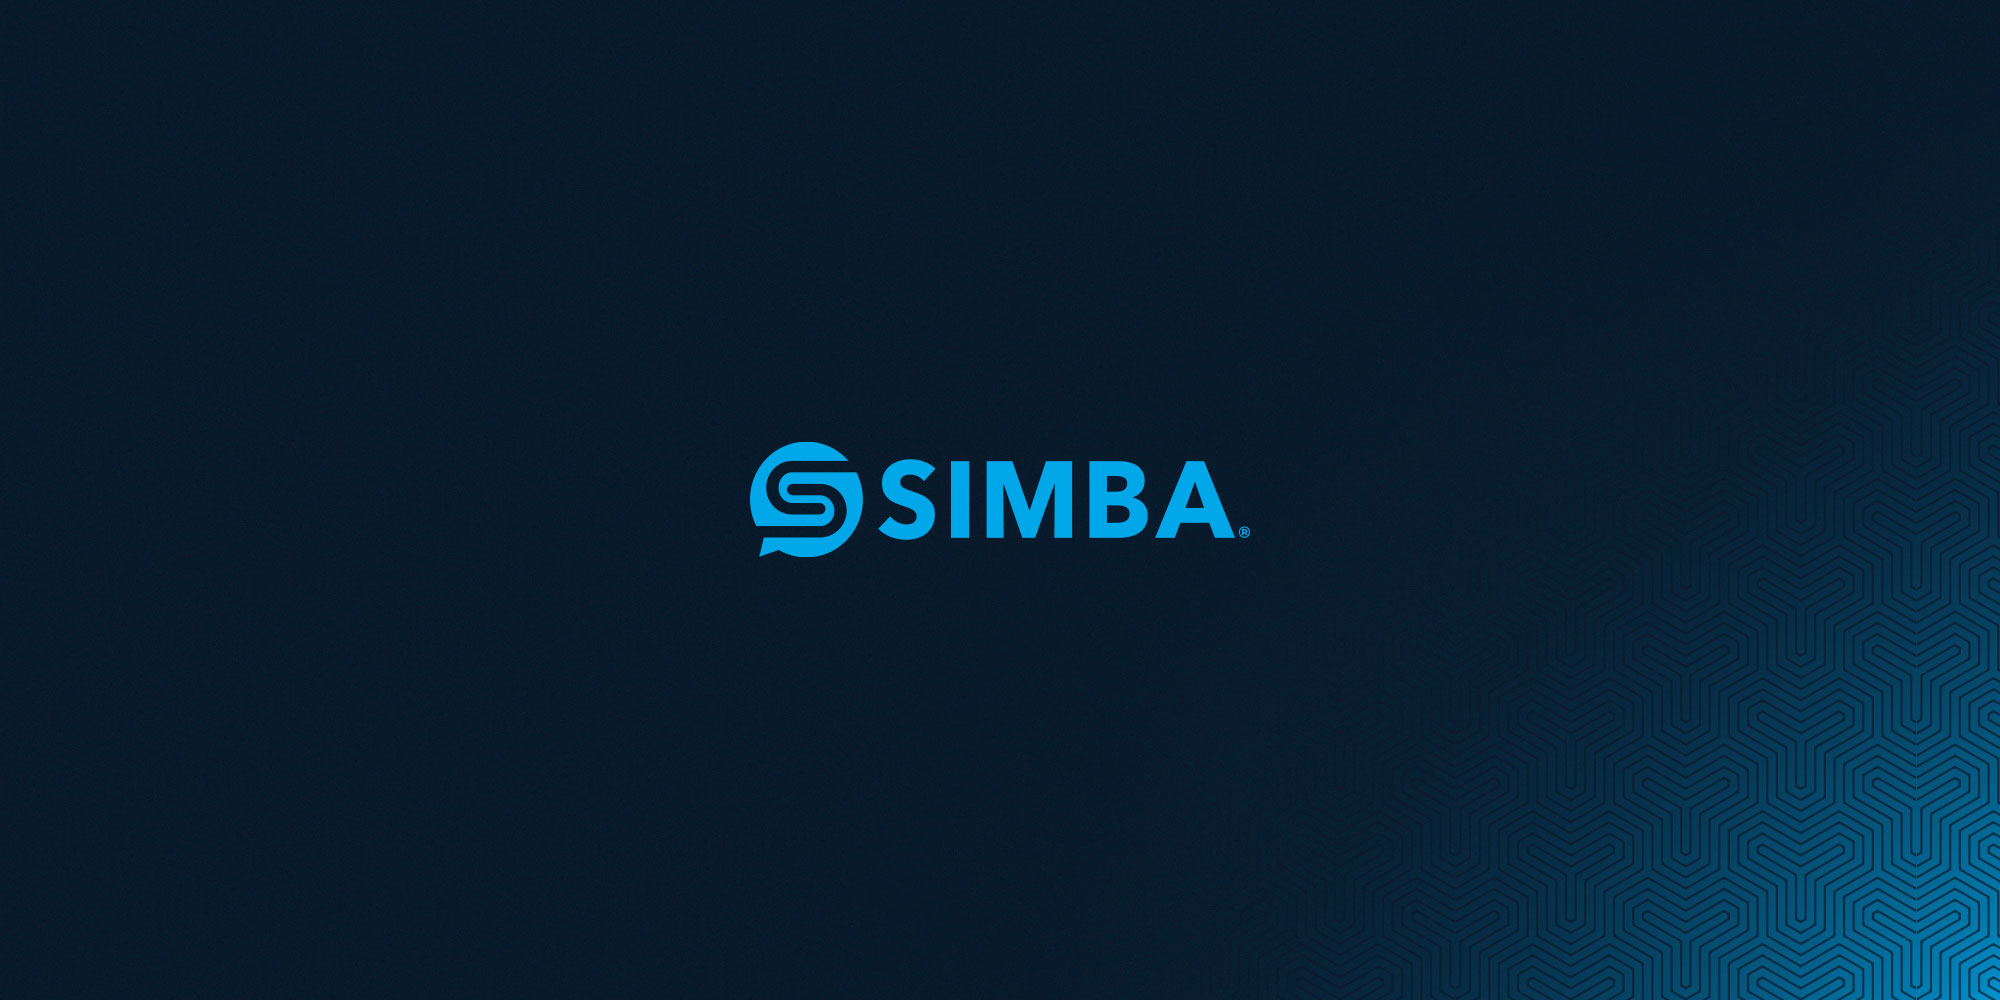 SIMBA Chain